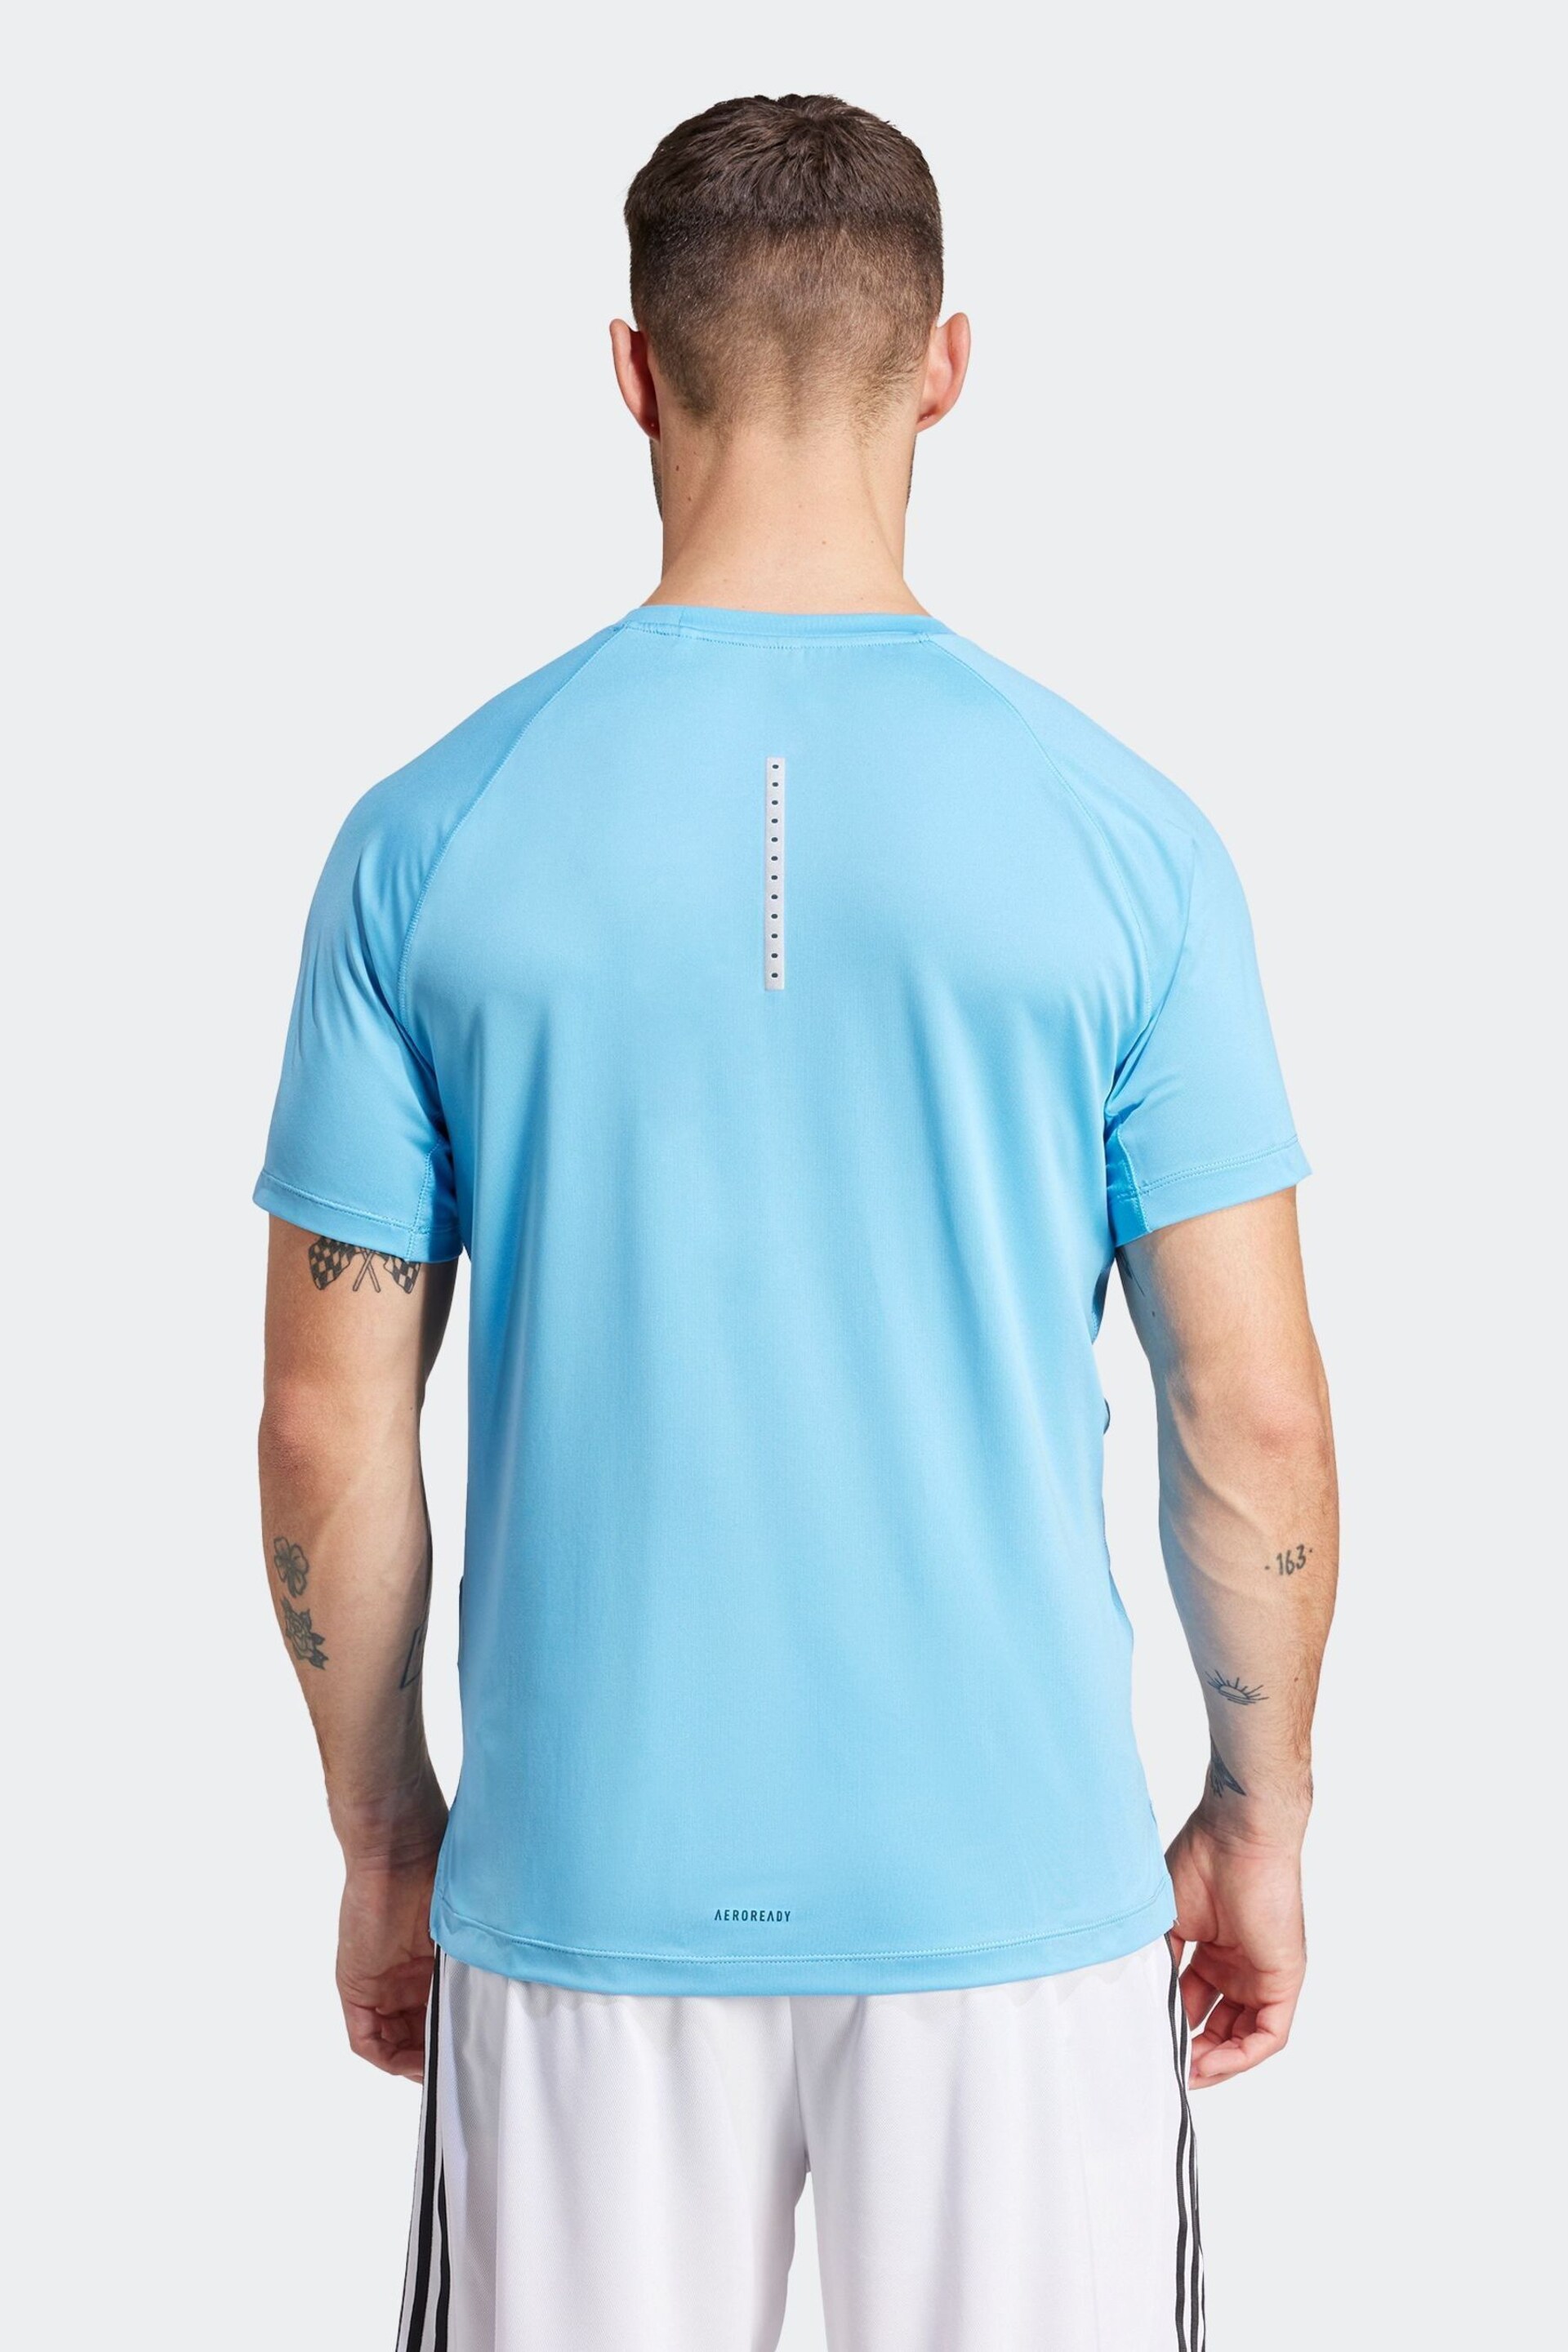 adidas Blue Gym+Training T-Shirt - Image 2 of 6